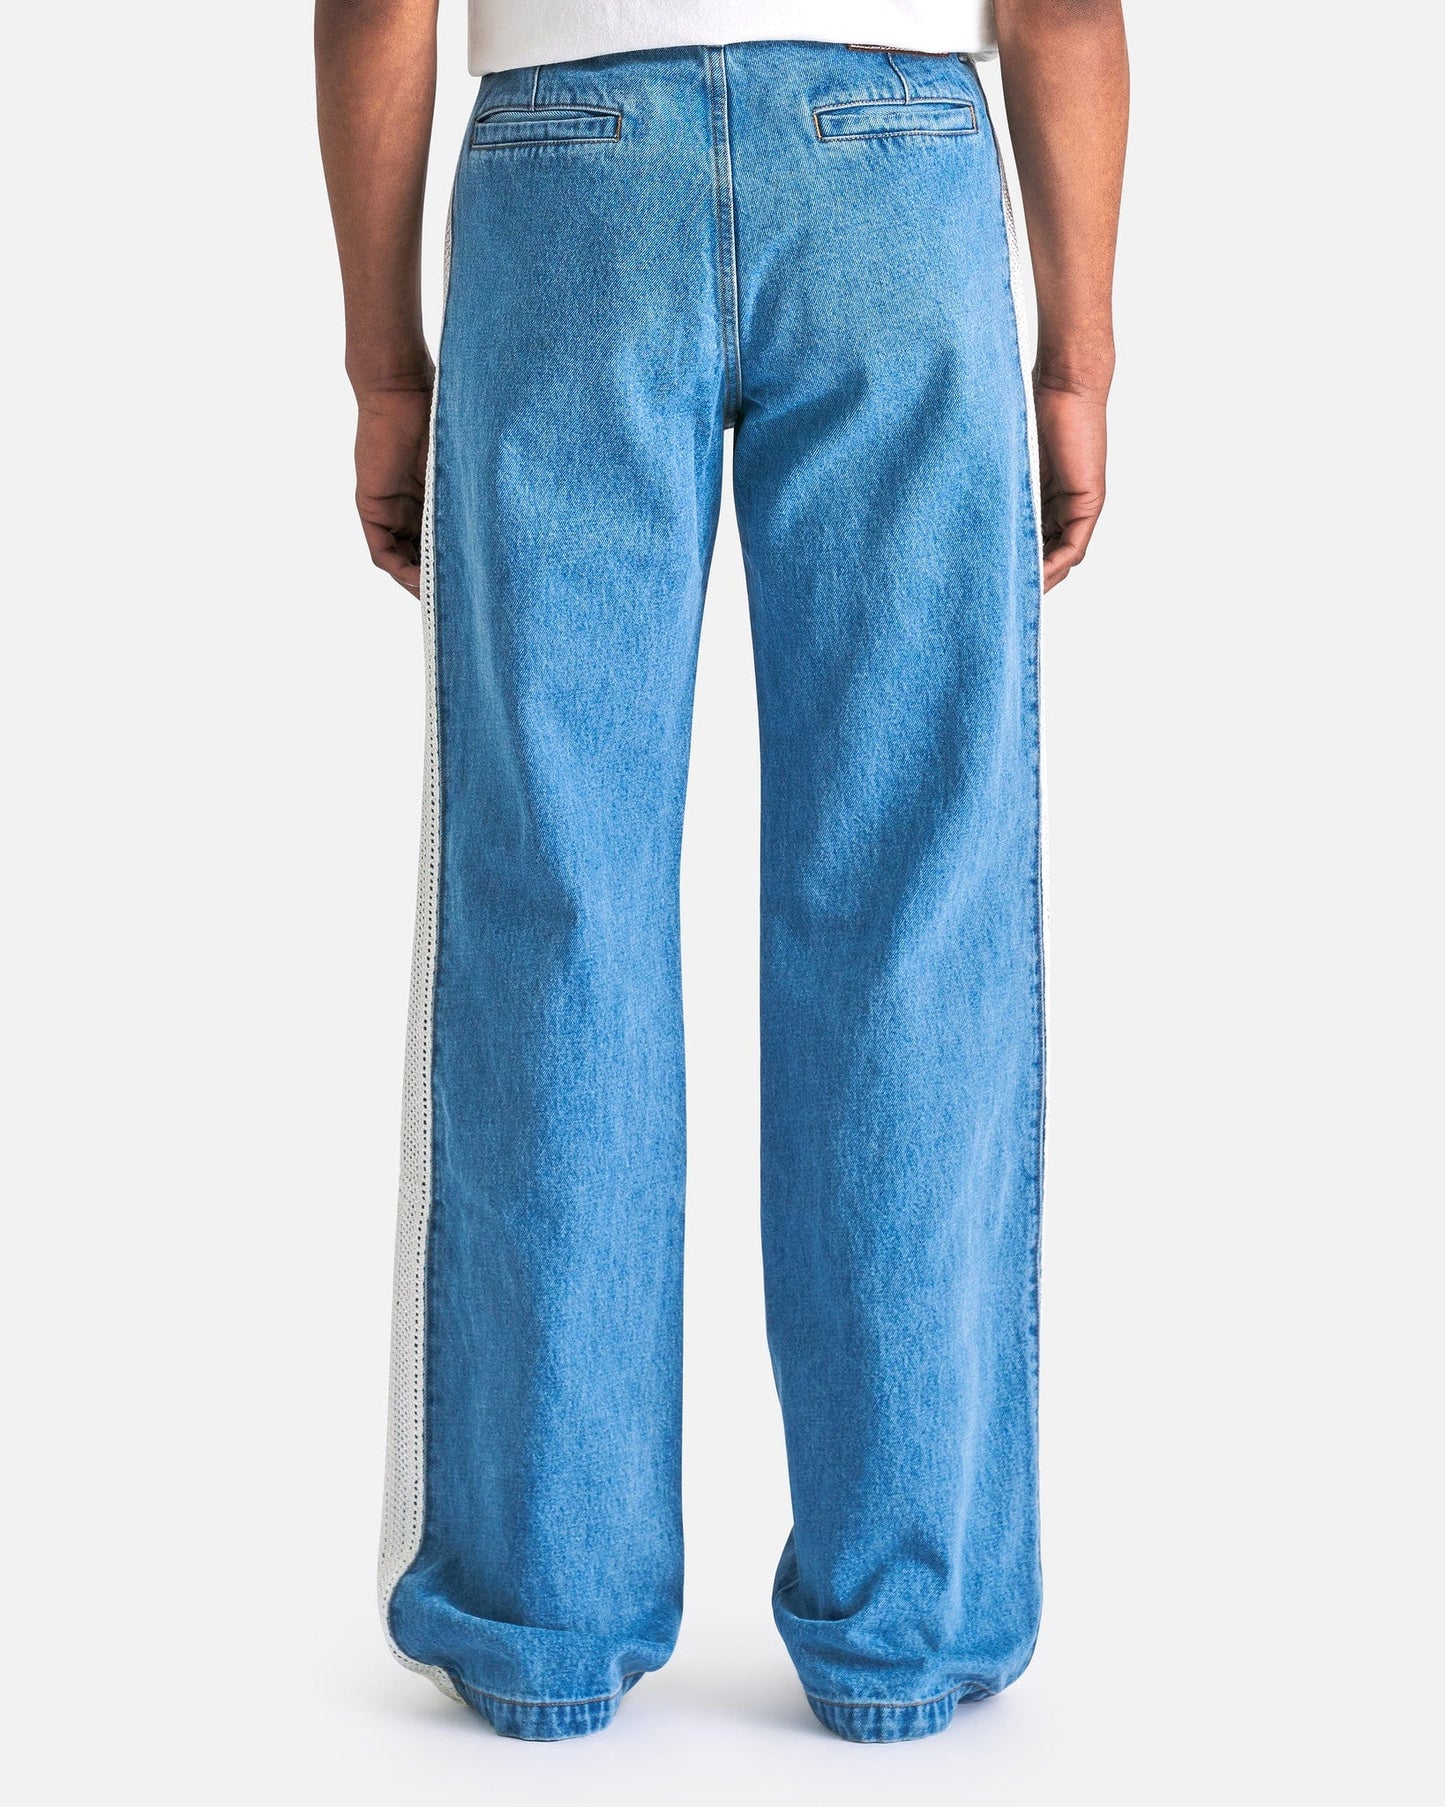 Wales Bonner Men's Jeans Eternity Trousers in Light Blue